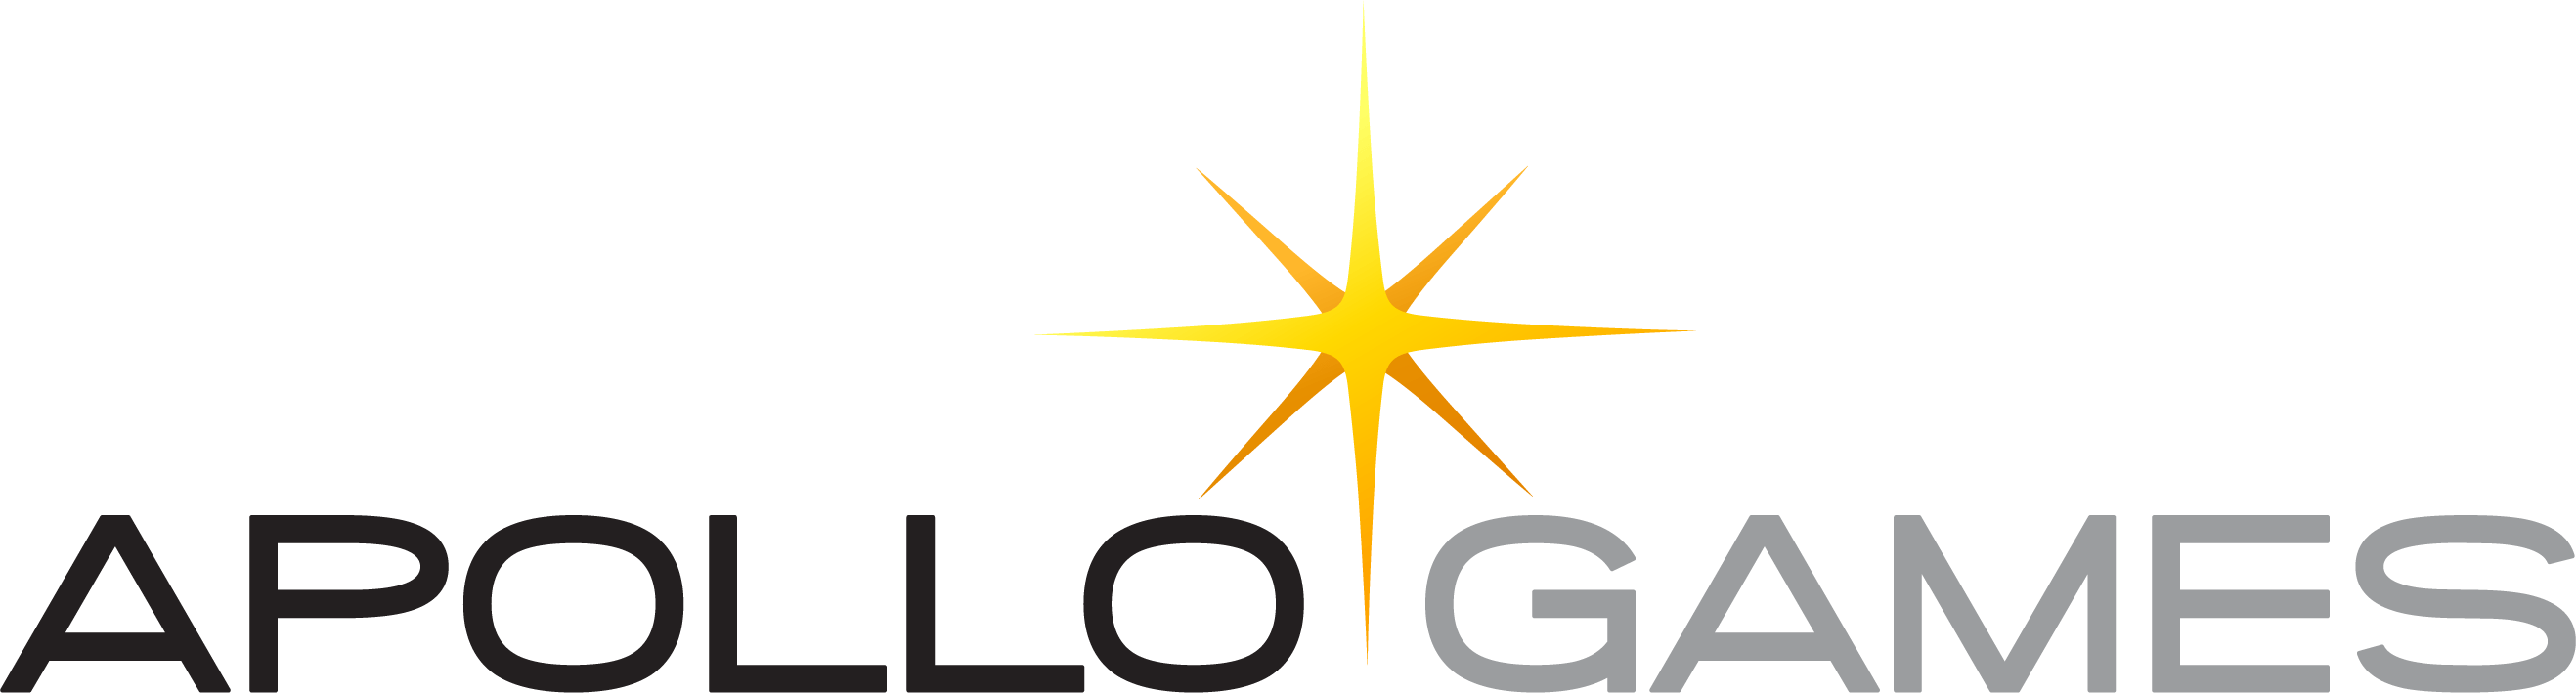 Apollo Games Logo PNG image